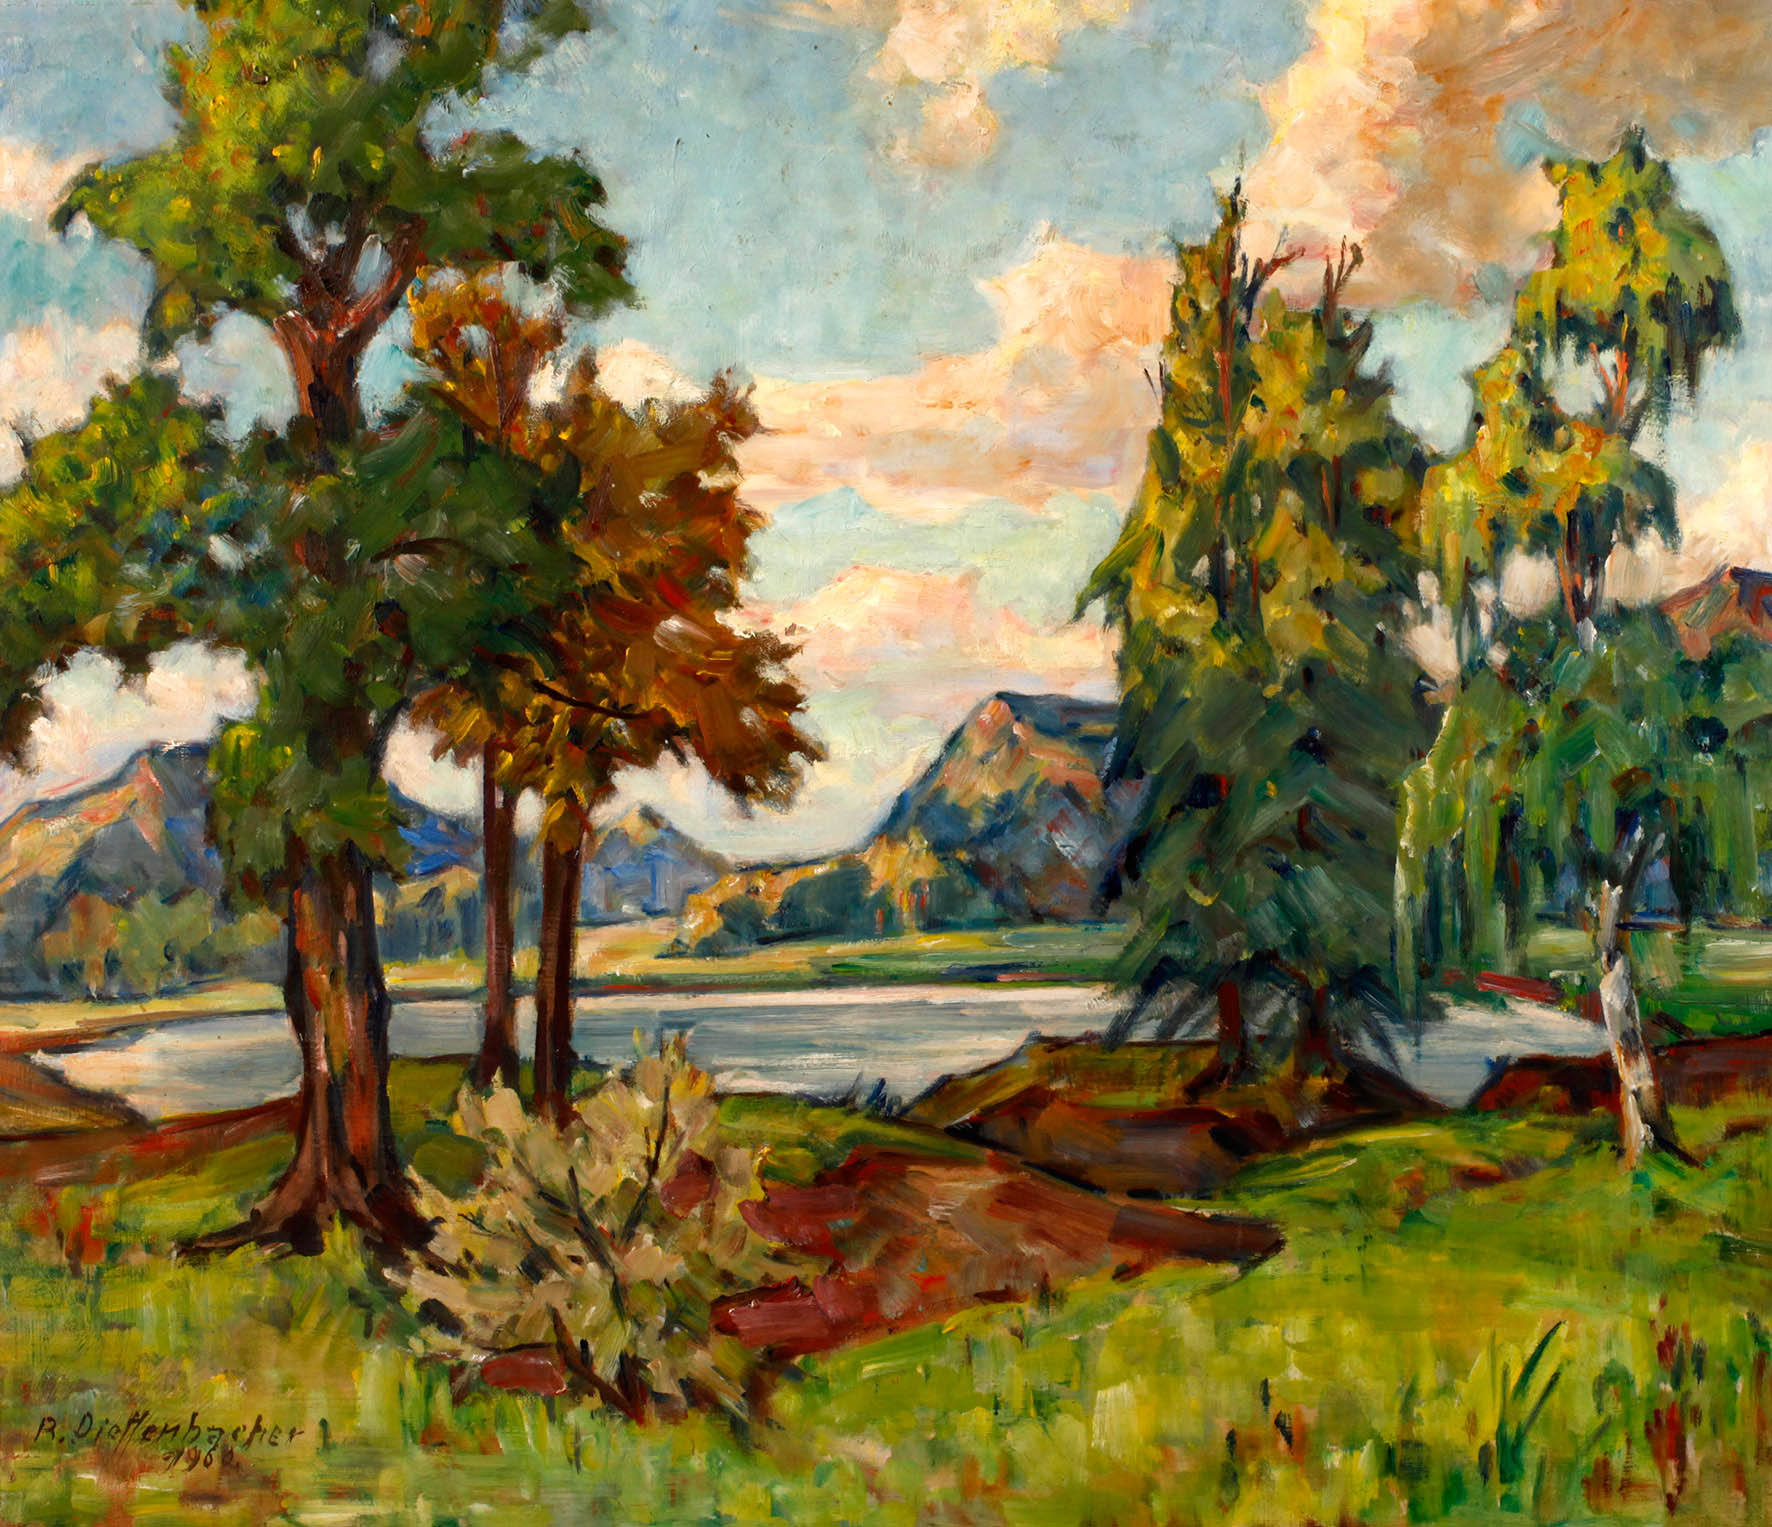 Reinhold Dieffenbacher, ”Bayerische Landschaft”